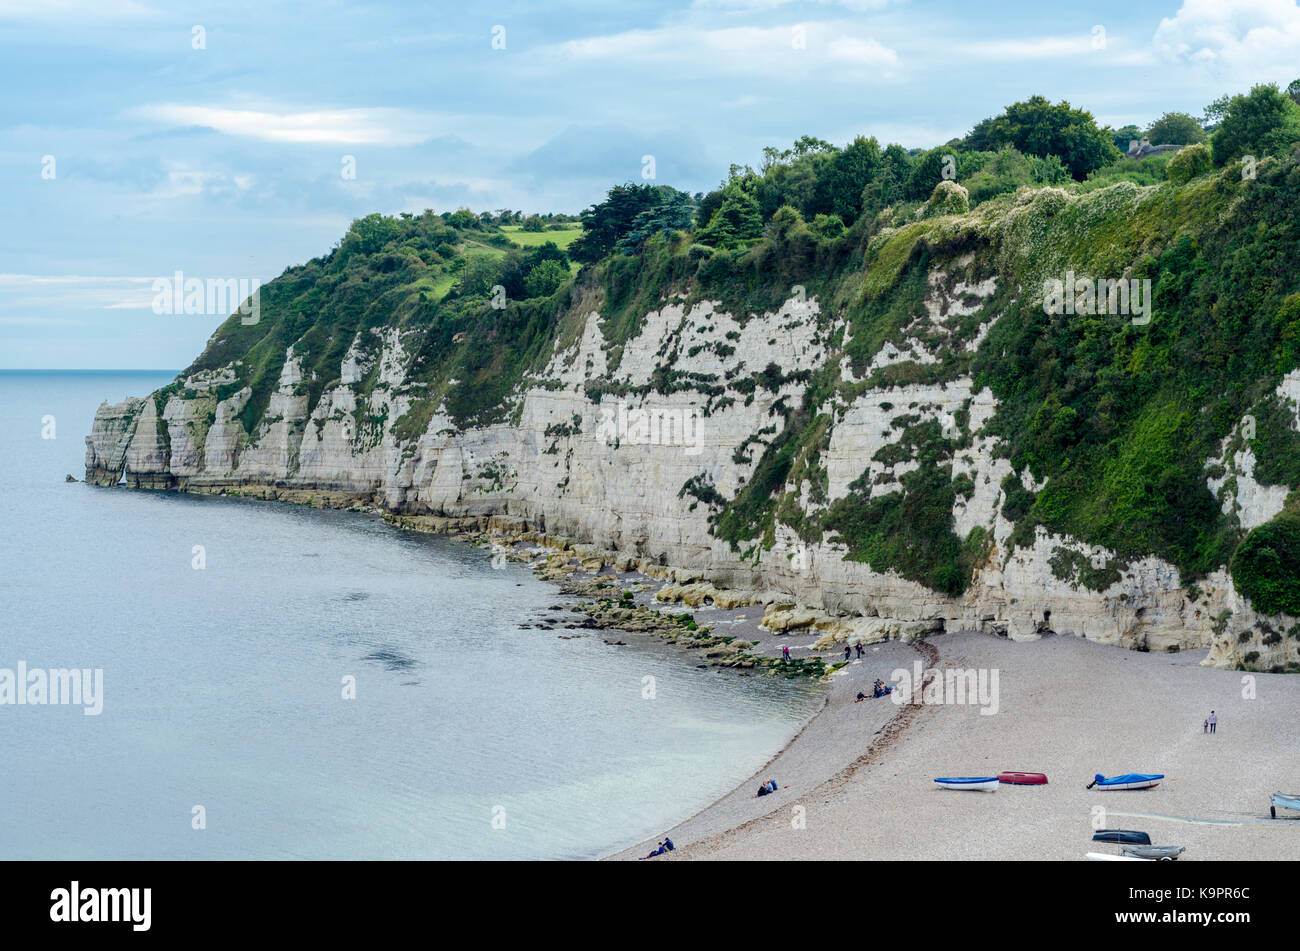 Jurassic Coast chalk scogliere e spiaggia, birra inglese mare città costiera, East Devon Coast, England, Regno Unito Foto Stock